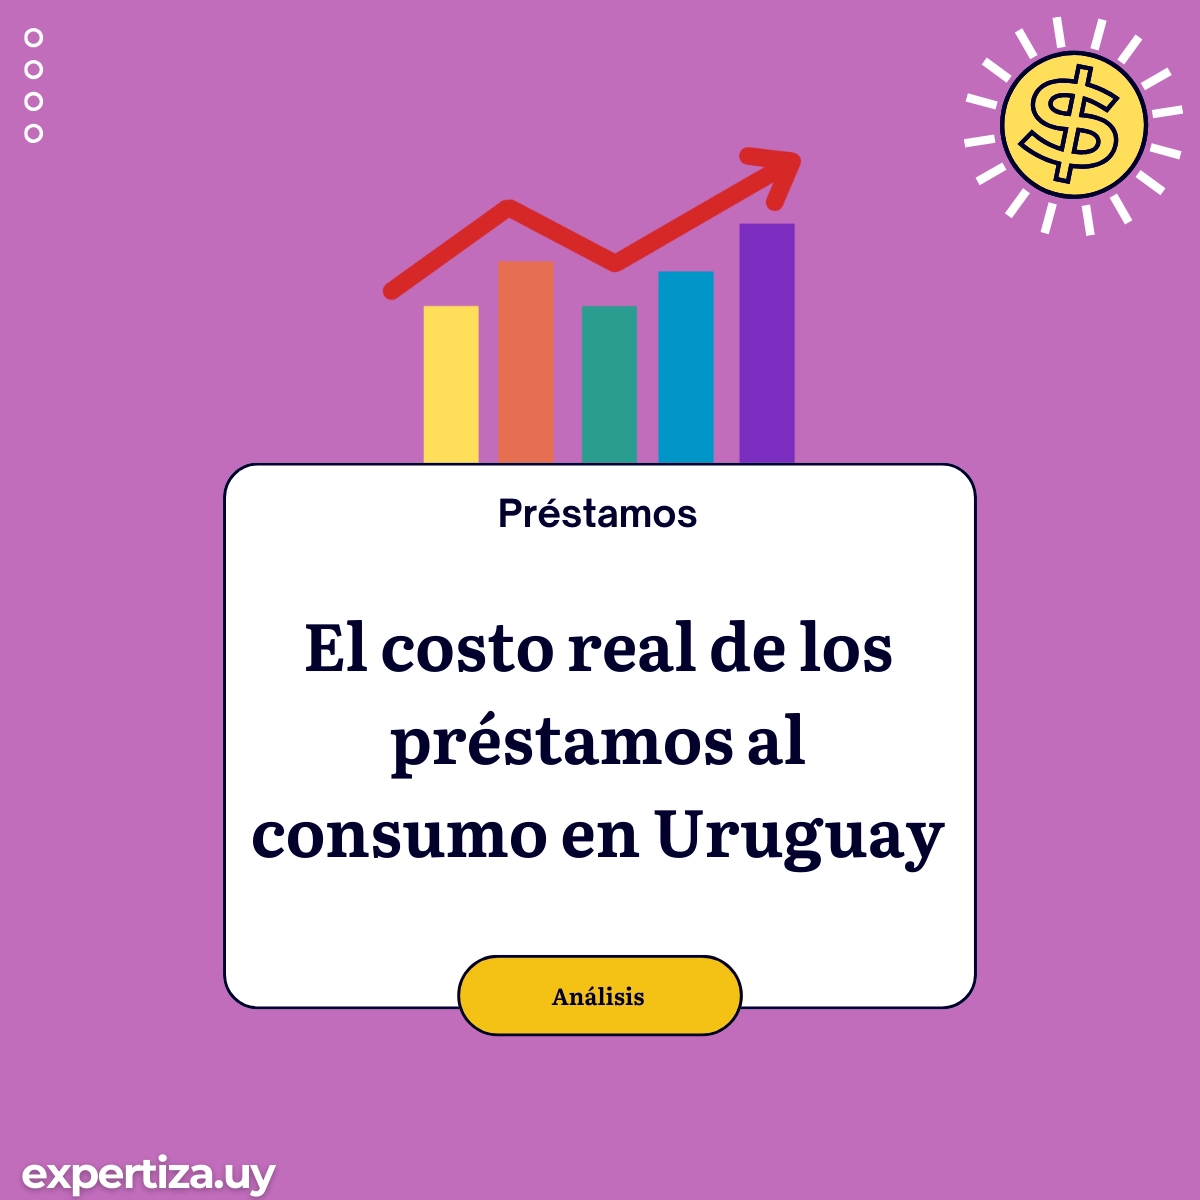 El costo real de los préstamos al consumo en Uruguay.